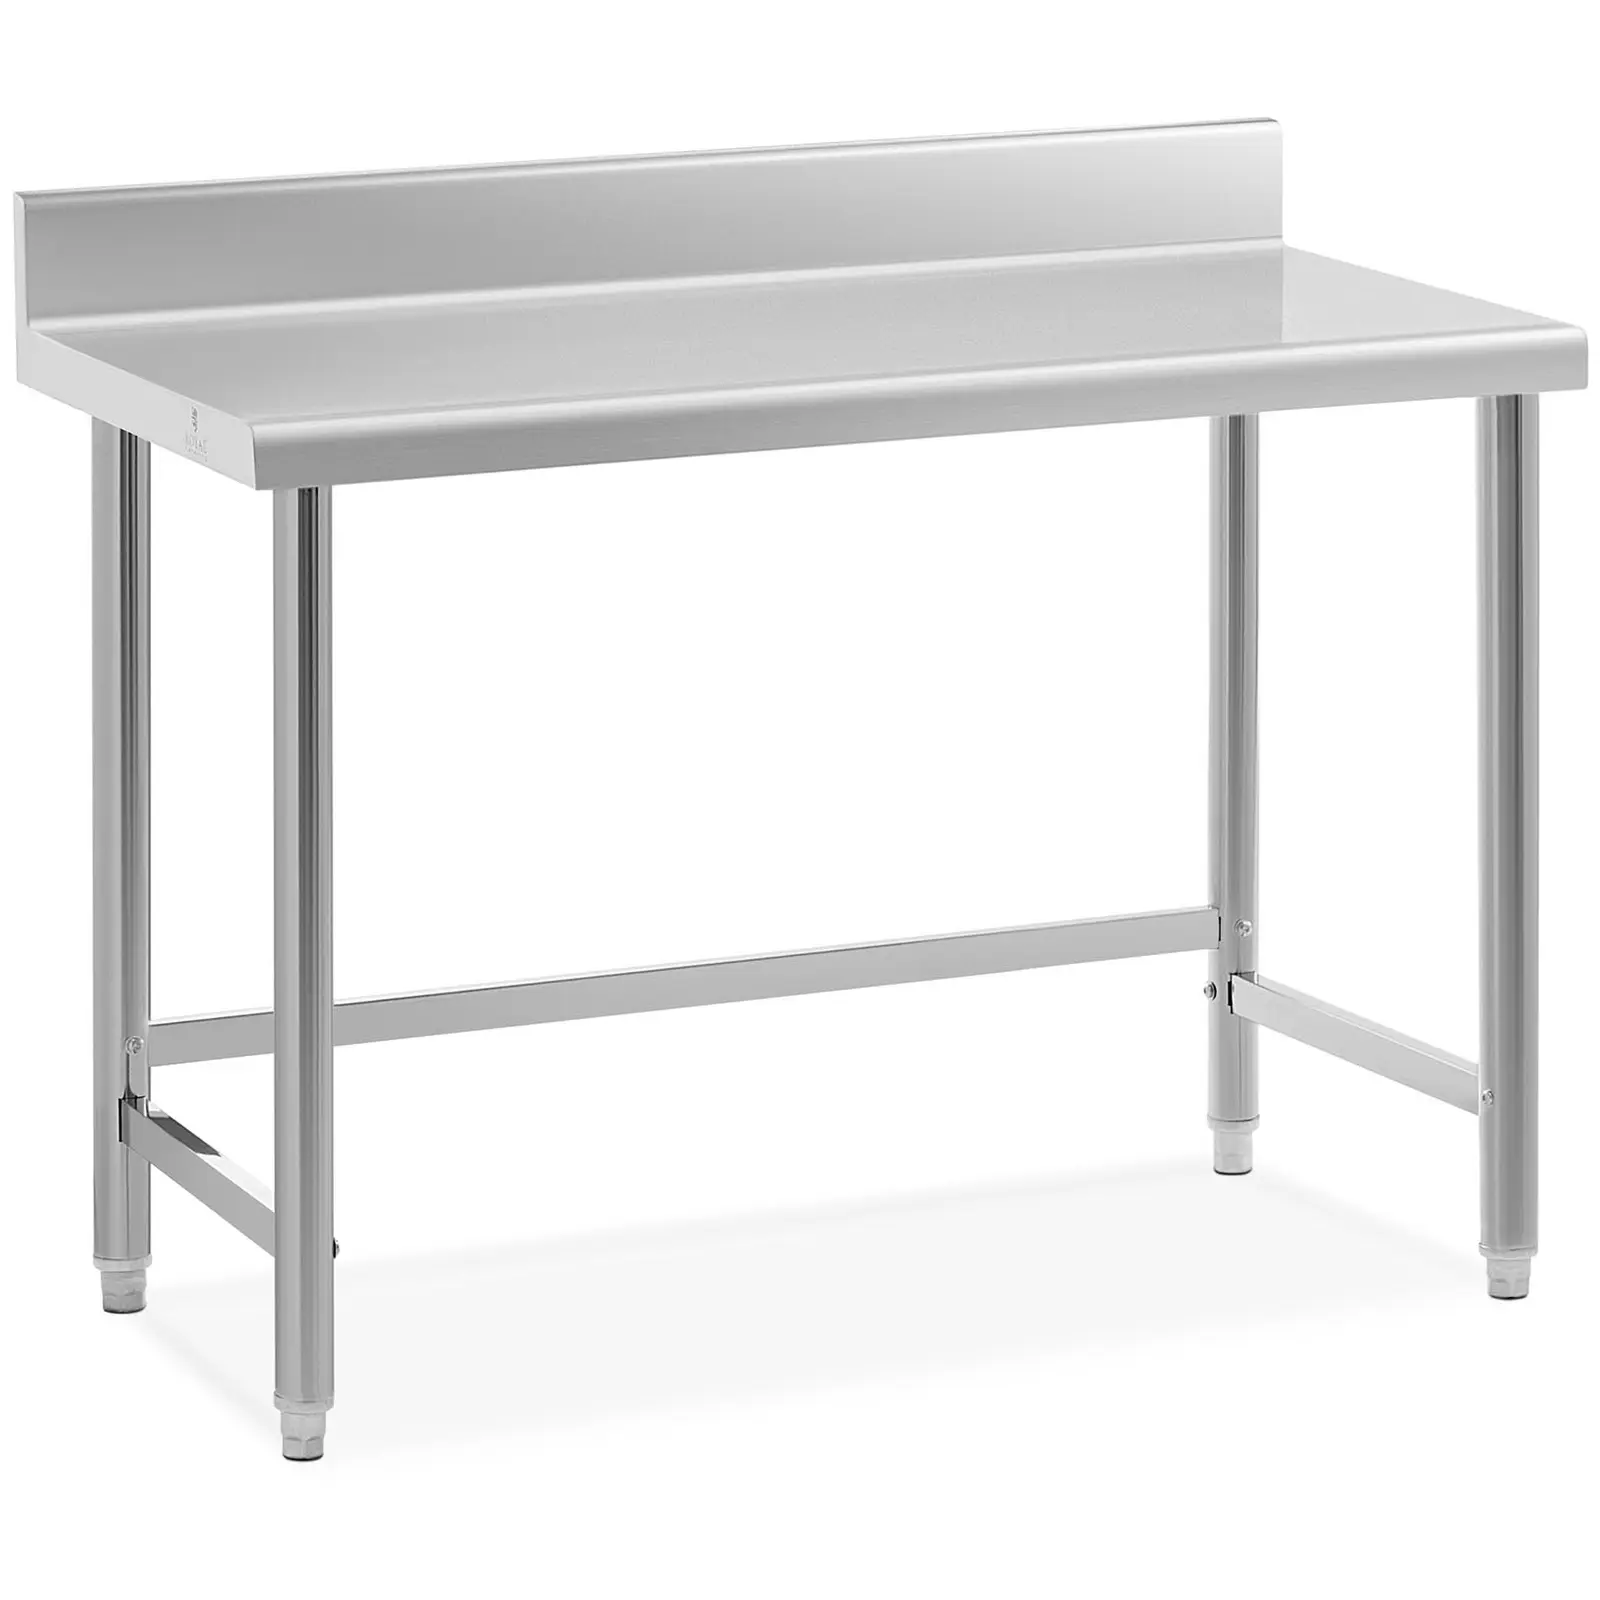 Pracovní stůl z ušlechtilé oceli 120 x 60 cm lem nosnost 91 kg - Pracovní stoly Royal Catering